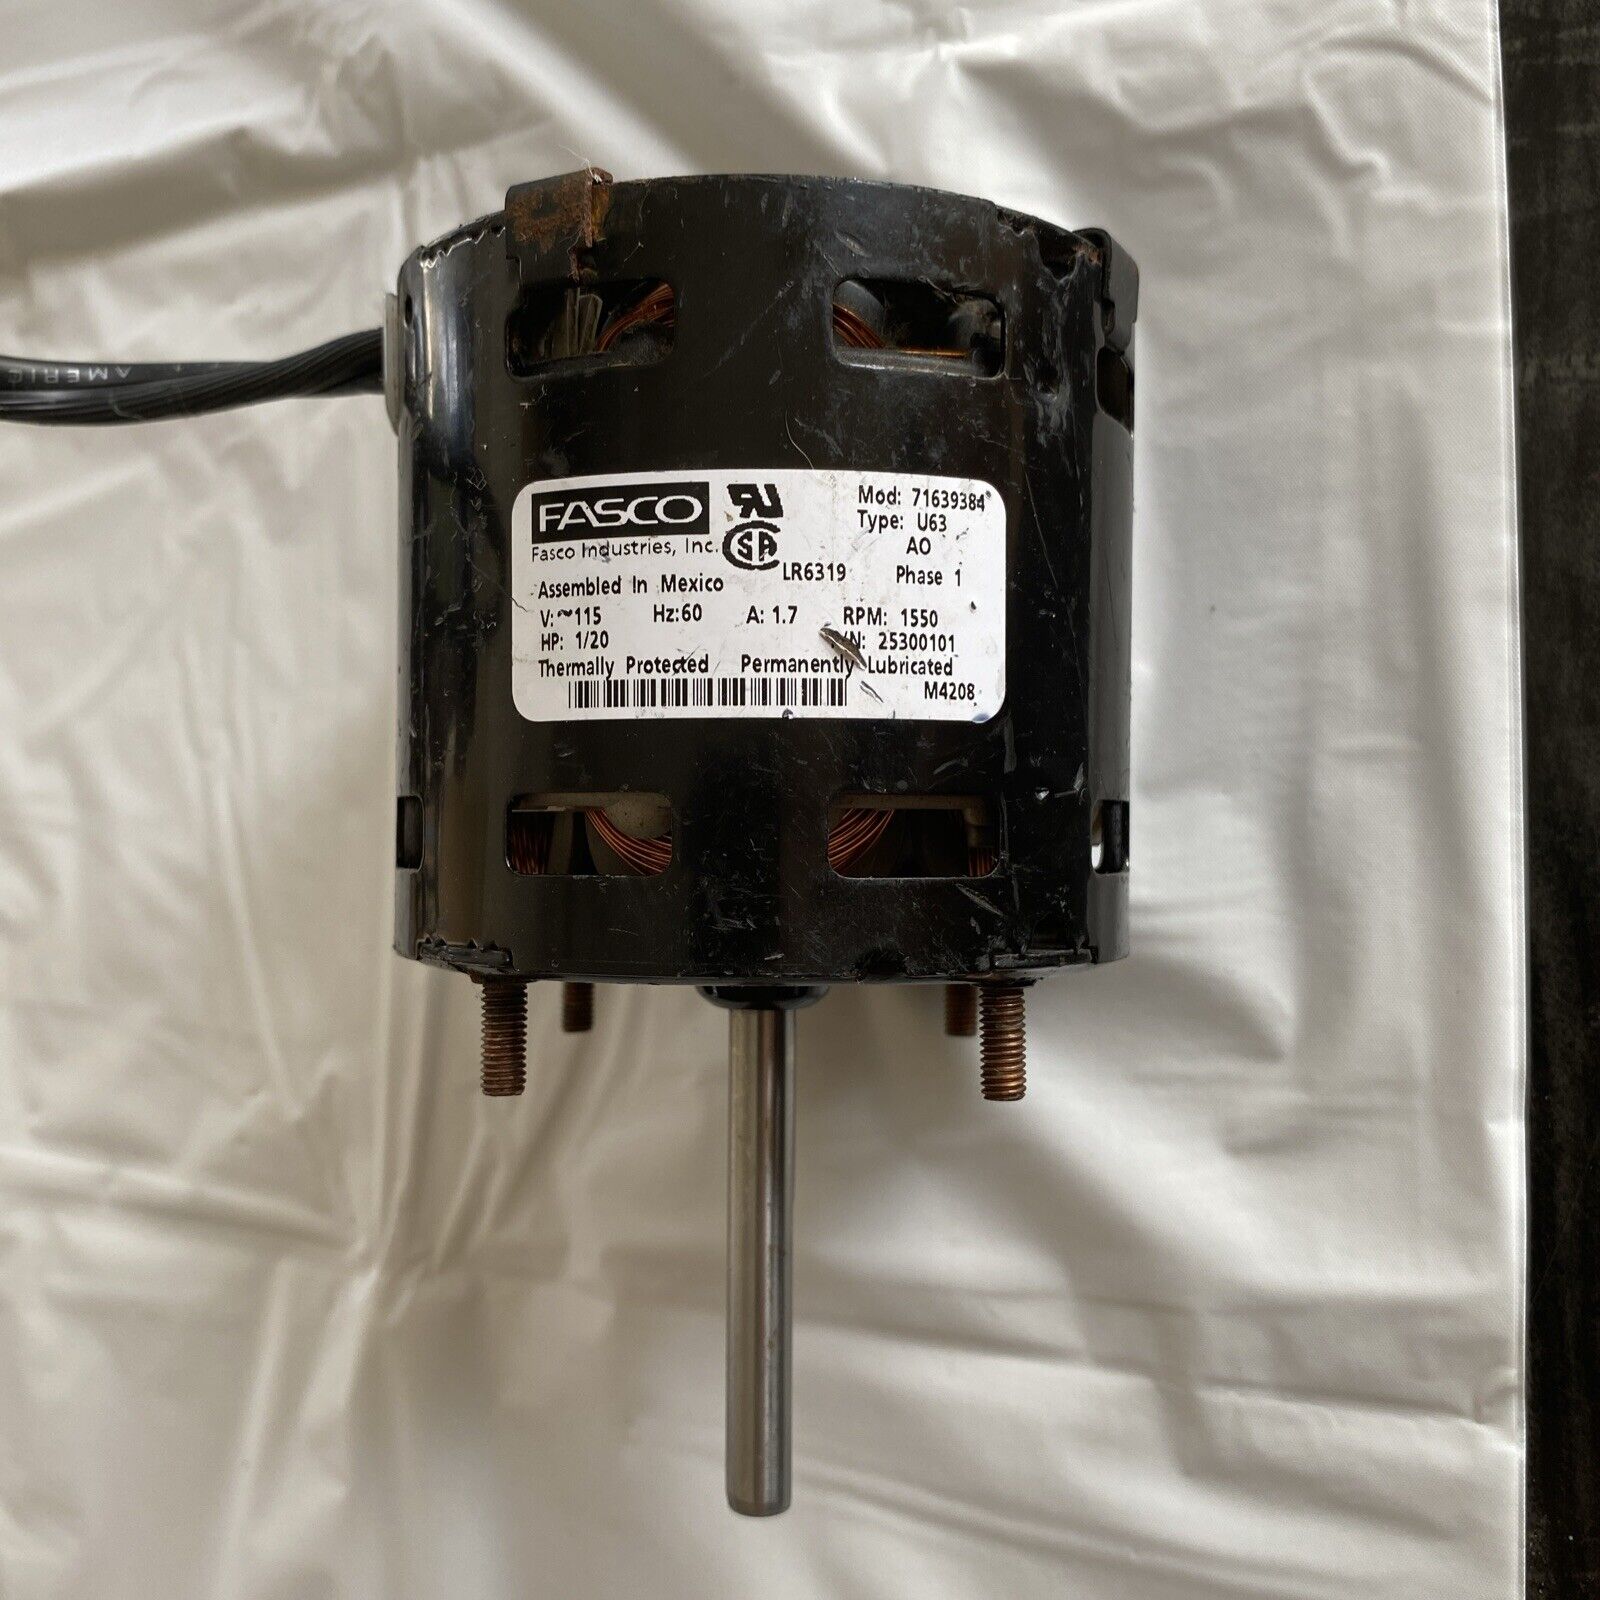 Fasco Industries Refrigerator Fan Replacement Motor Model 71639384